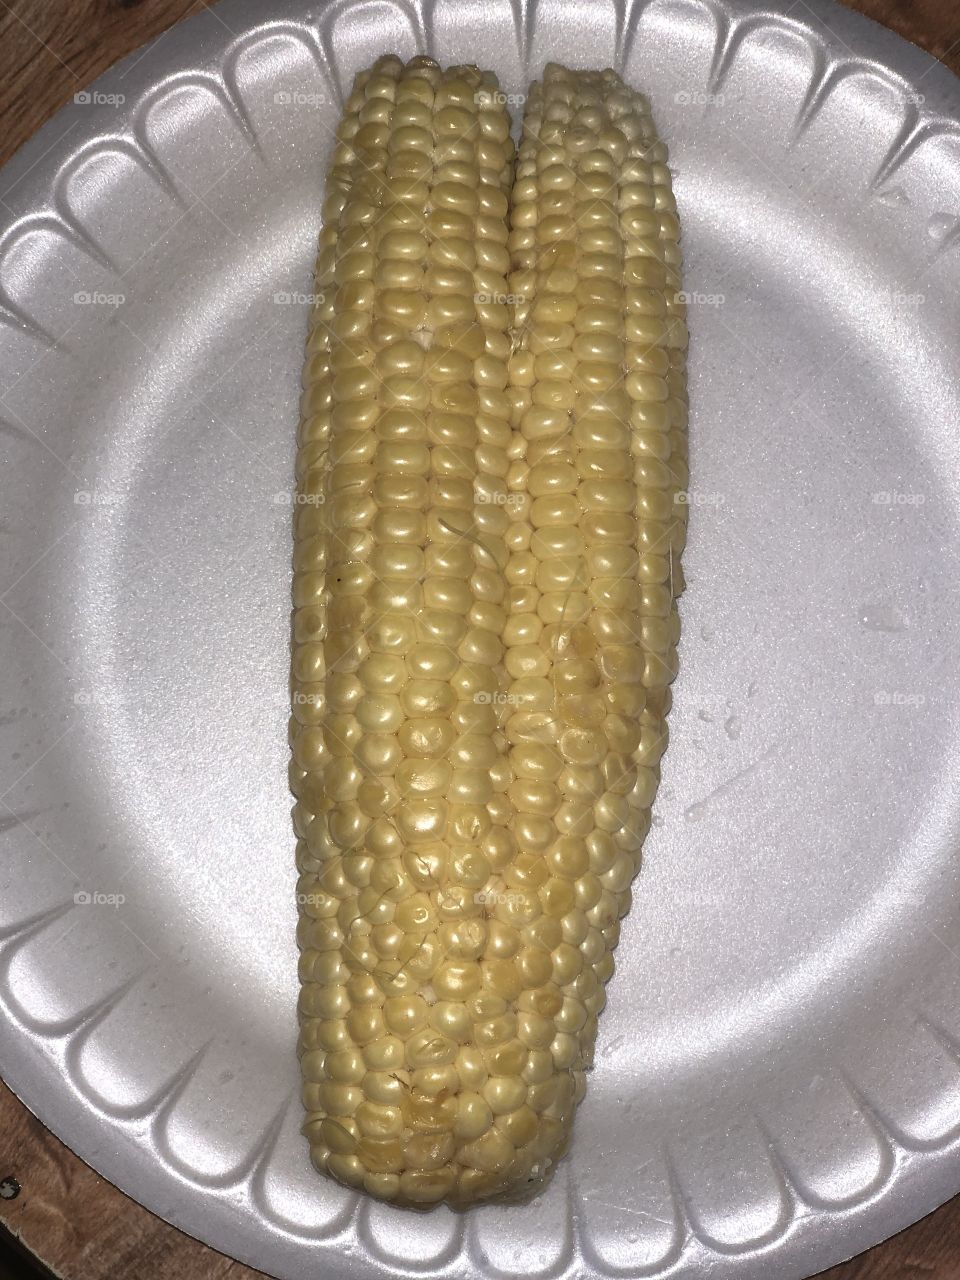 Twin corn